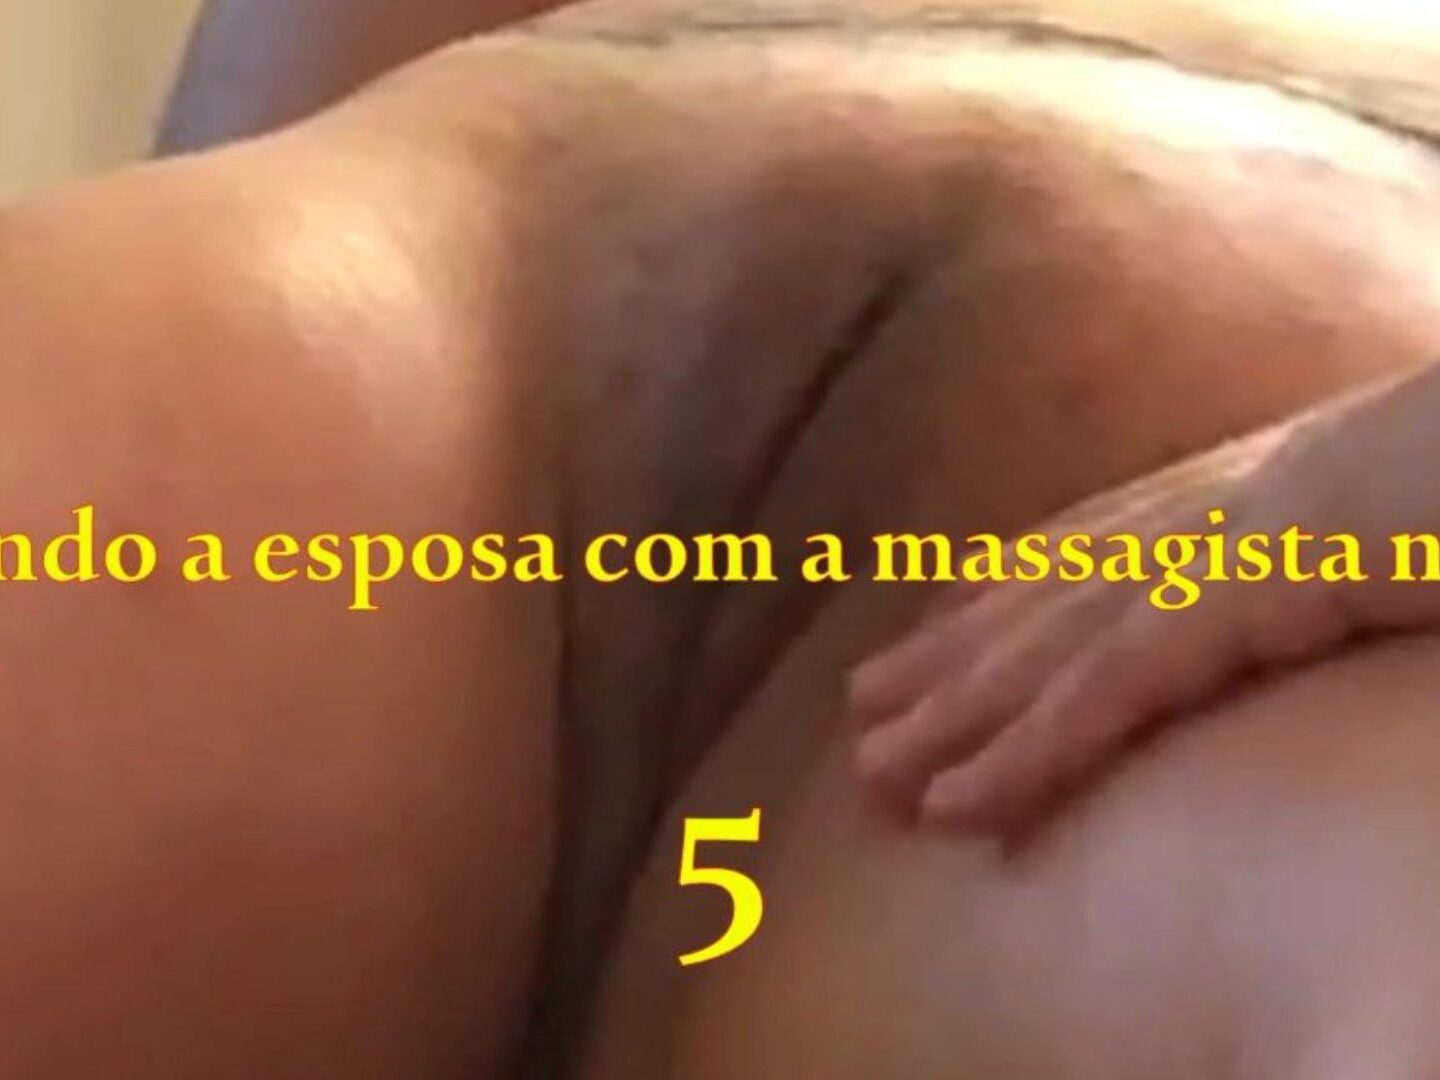 Lesbian Massage Porn bild